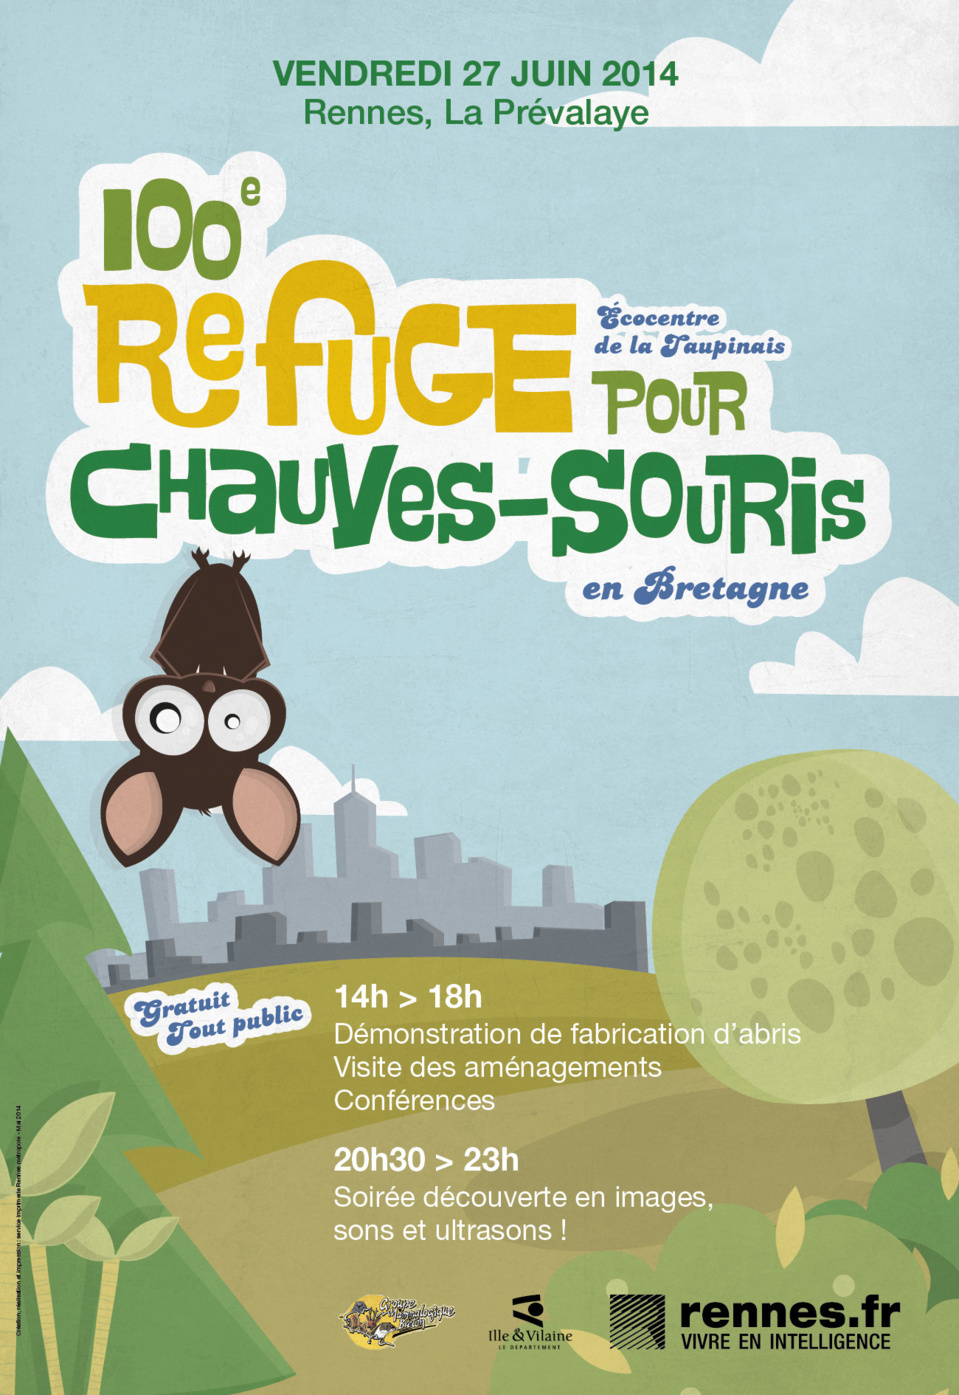 Fêtons le 100ème refuge pour les chauves-souris le 27 juin à Rennes !